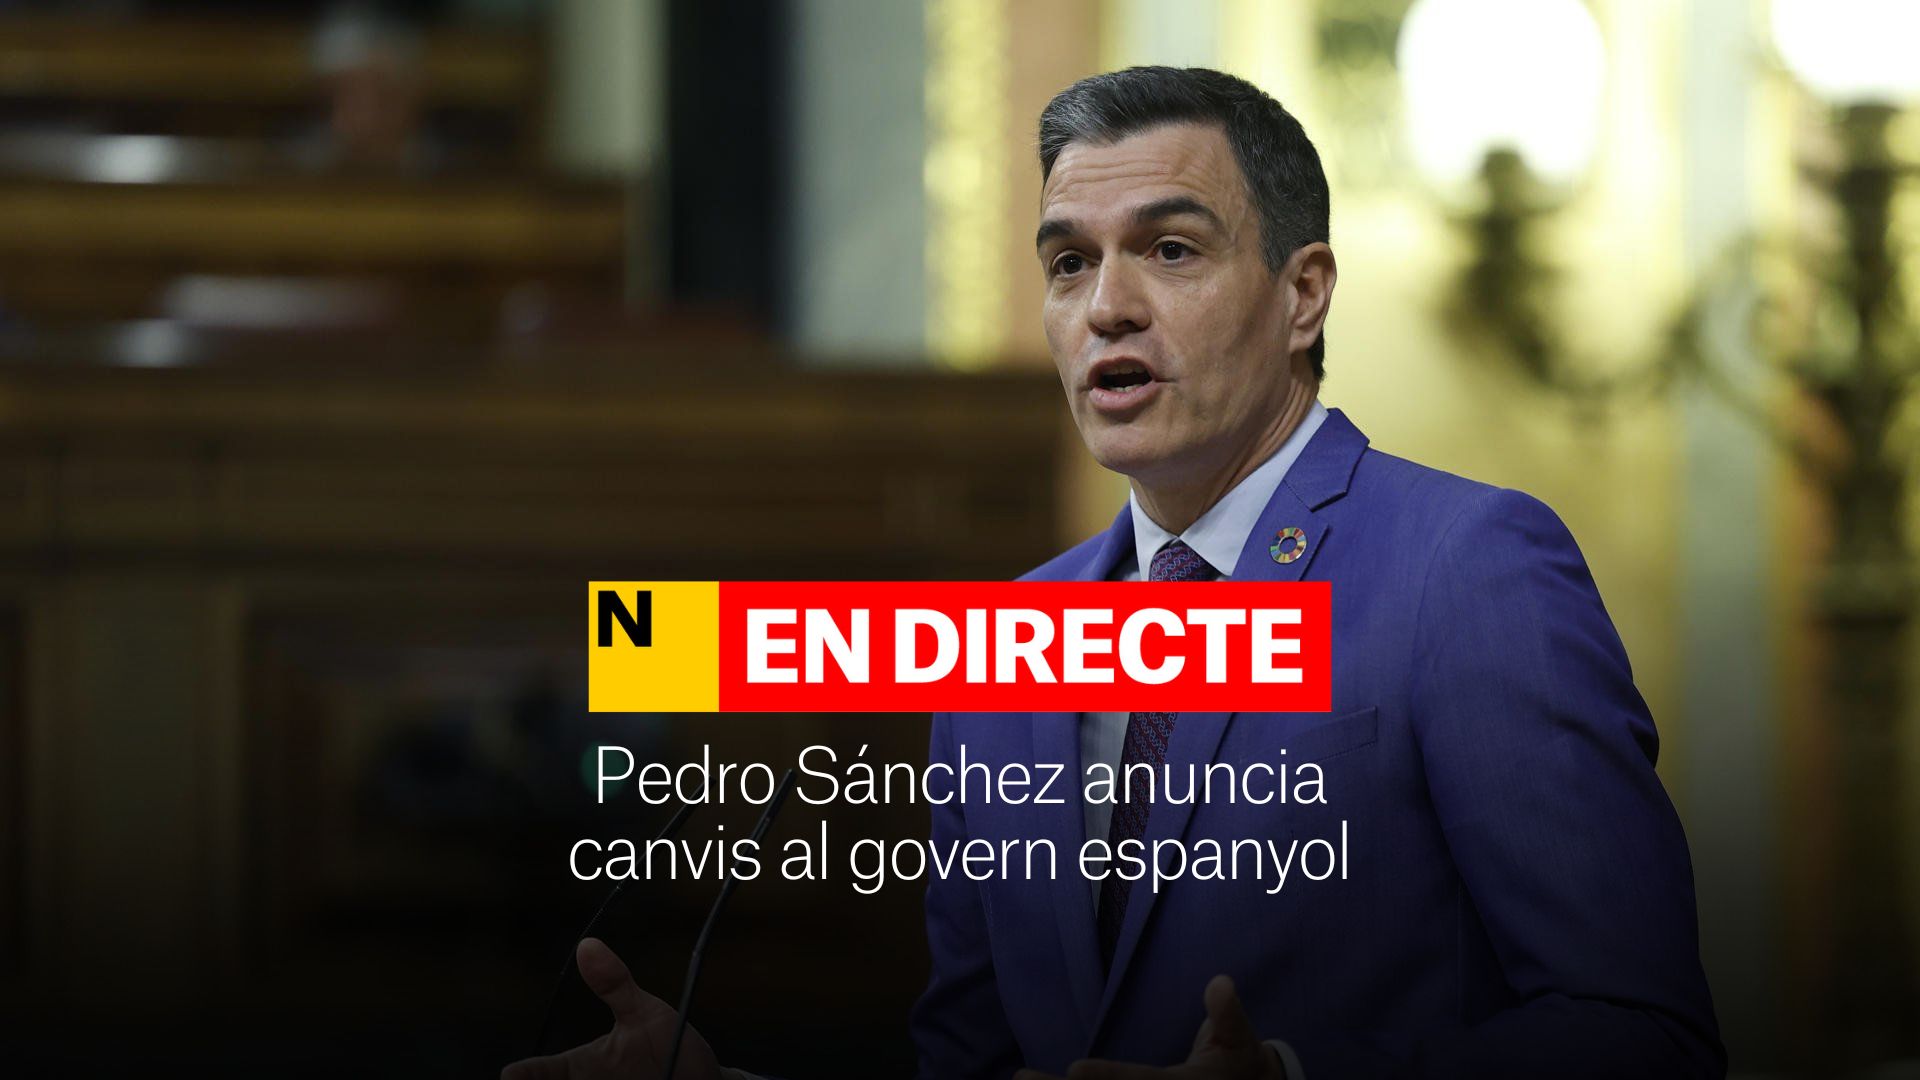 Pedro Sánchez anuncia cambios en el Gobierno, DIRECTO | Última hora